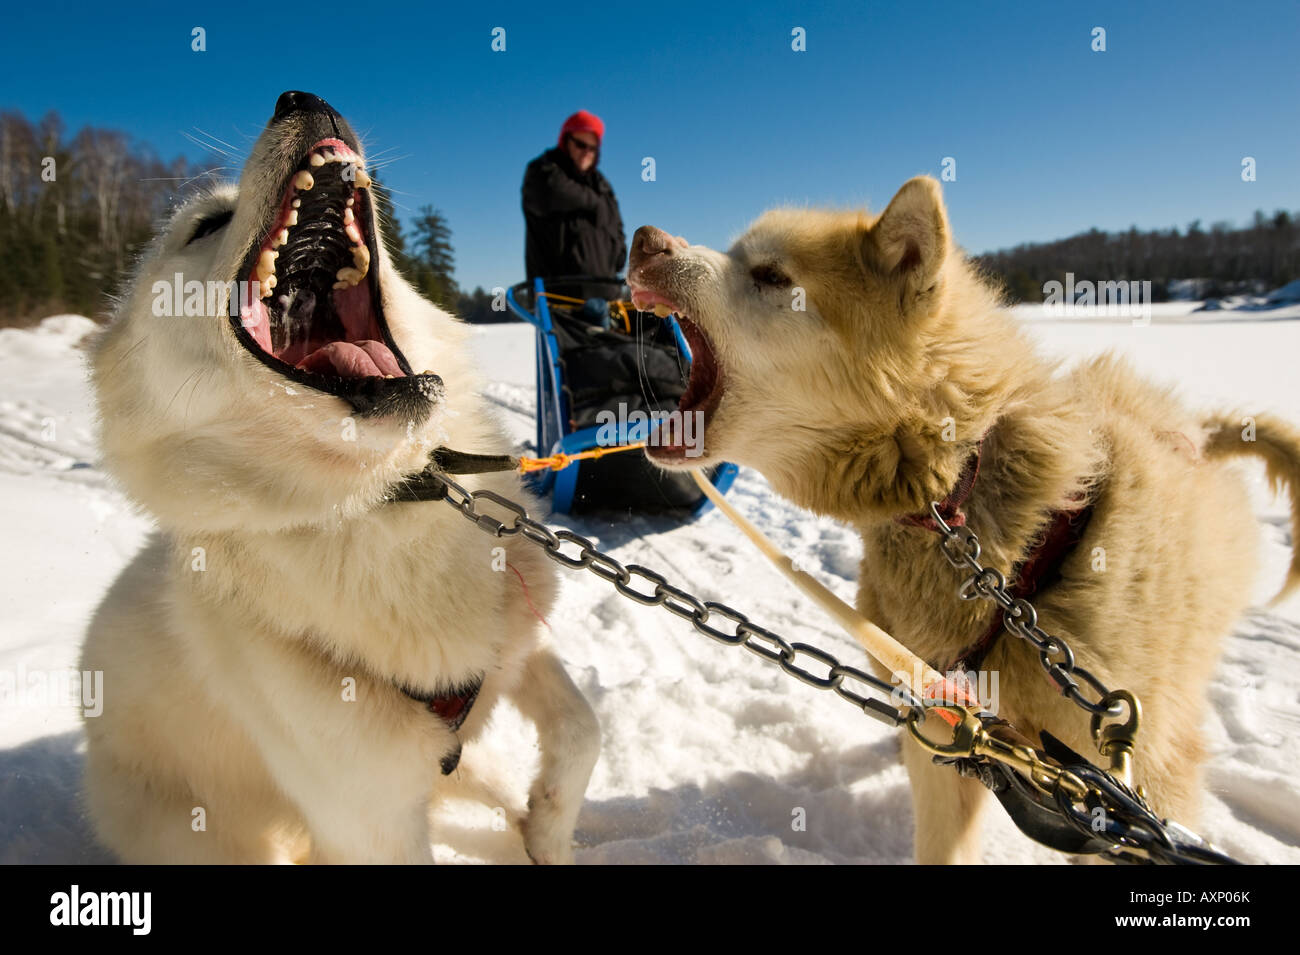 Deux chiens inuits CANADIENS ONT UNE DISCUSSION LE LONG DU CHEMIN Boundary Waters Canoe Area au Minnesota Banque D'Images